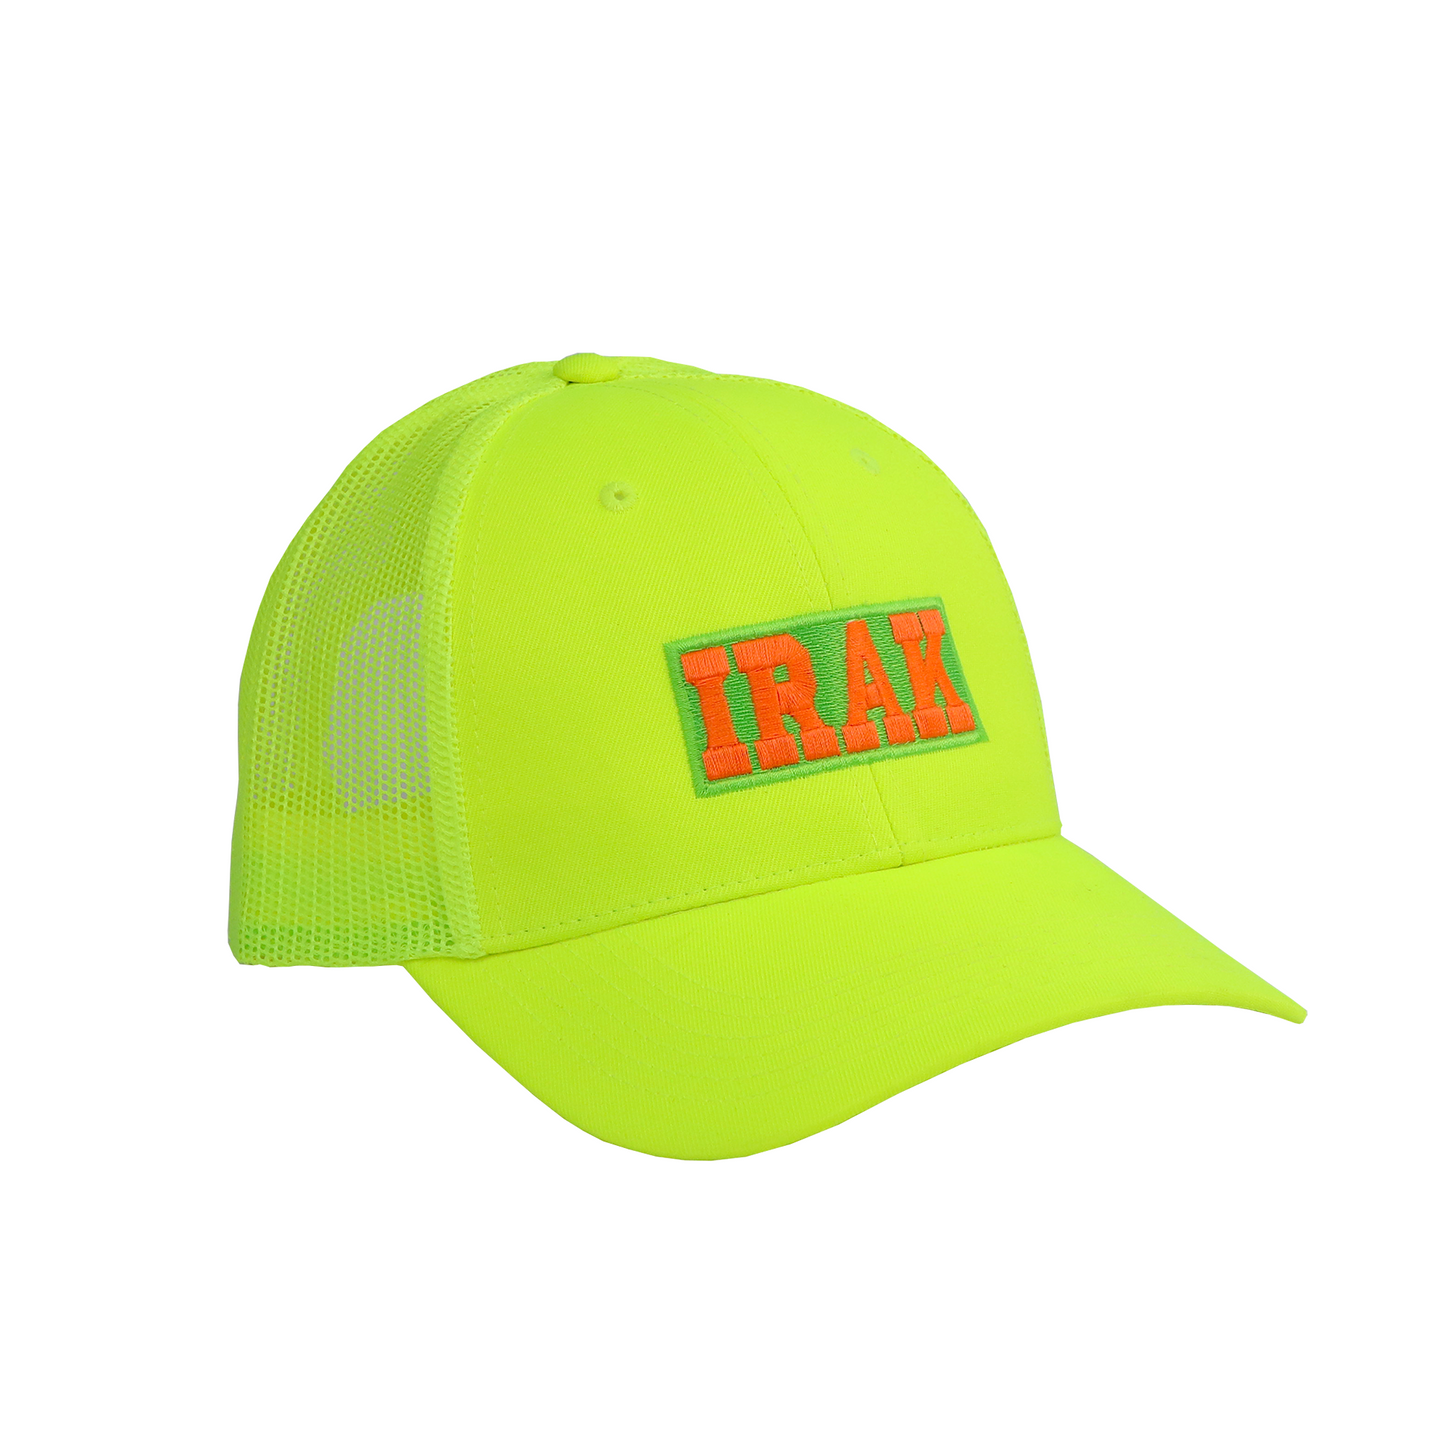 Neon IRAK Trucker Hat